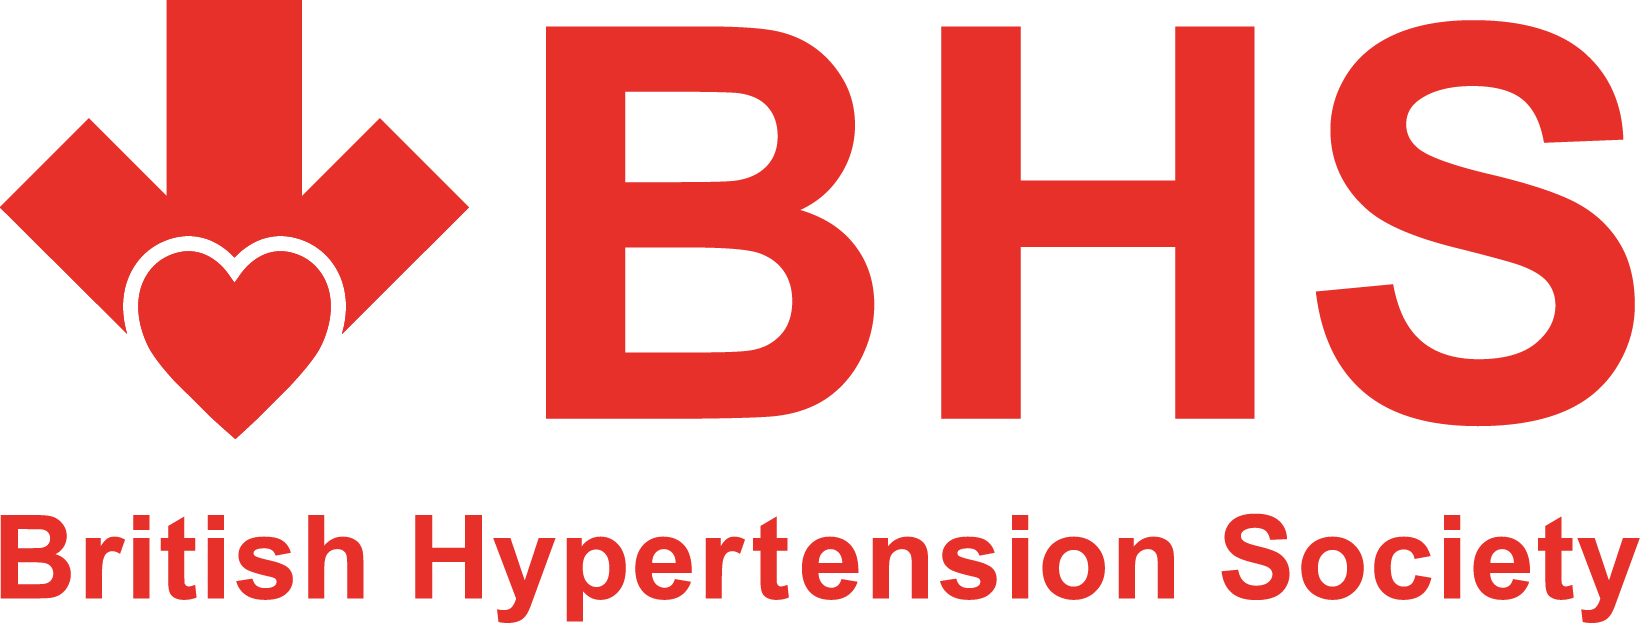 British Hypertension Society Logo - British Hypertension Society Logo (1640x623)